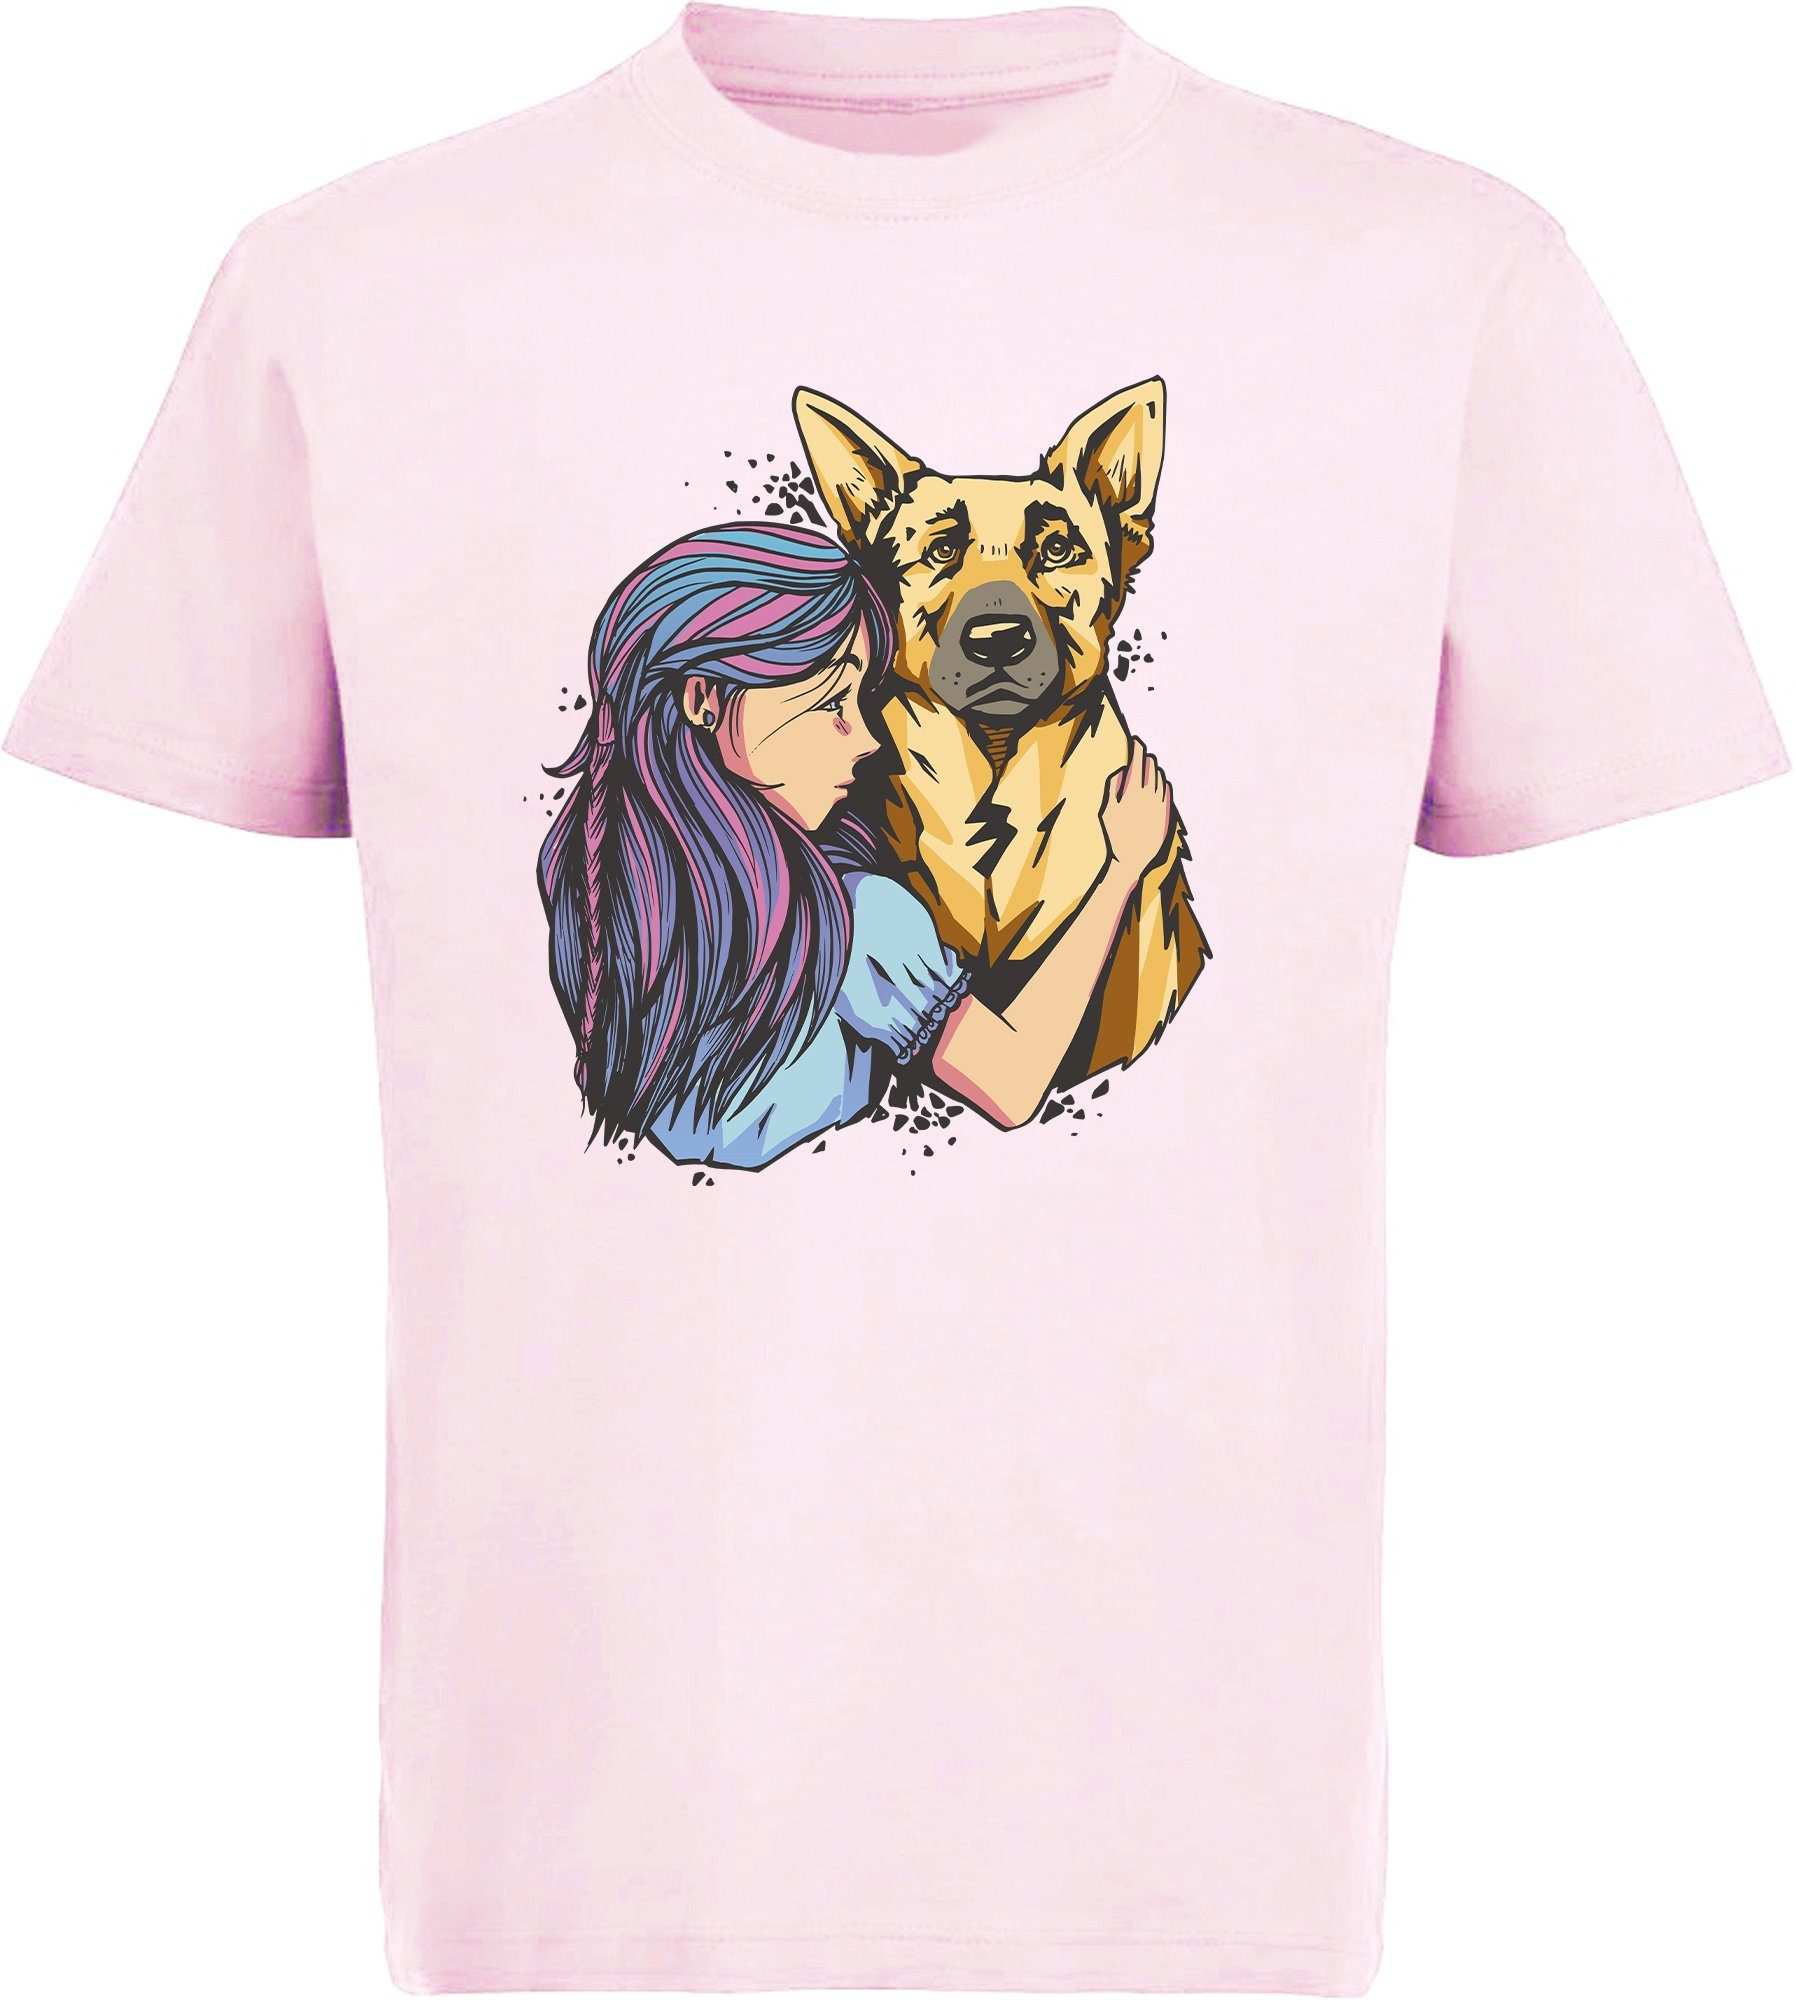 100 % authentisch garantiert MyDesign24 T-Shirt Aufdruck, Shirt i258 Baumwollshirt Schäferhund Kinder Print bedruckt - Hunde rosa Mädchen mit mit